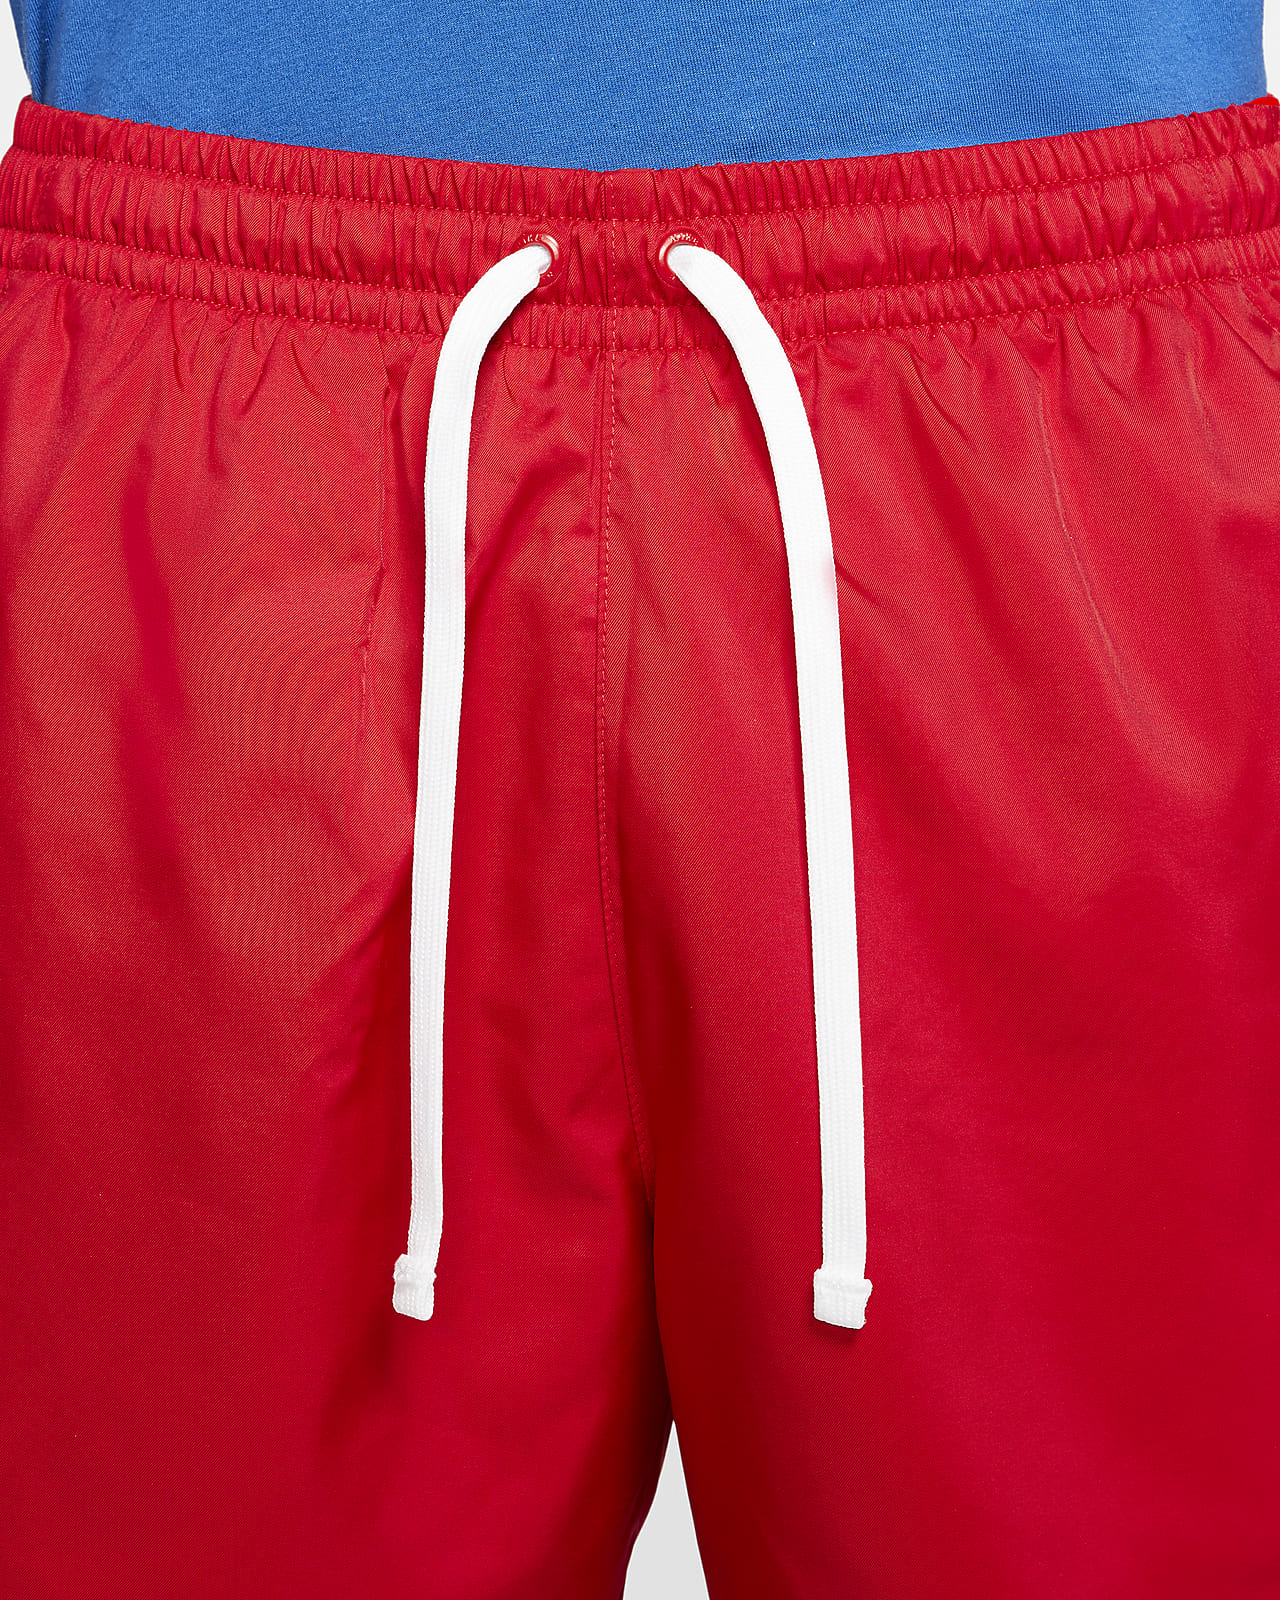 Buy > nike woven shorts viotech > in stock